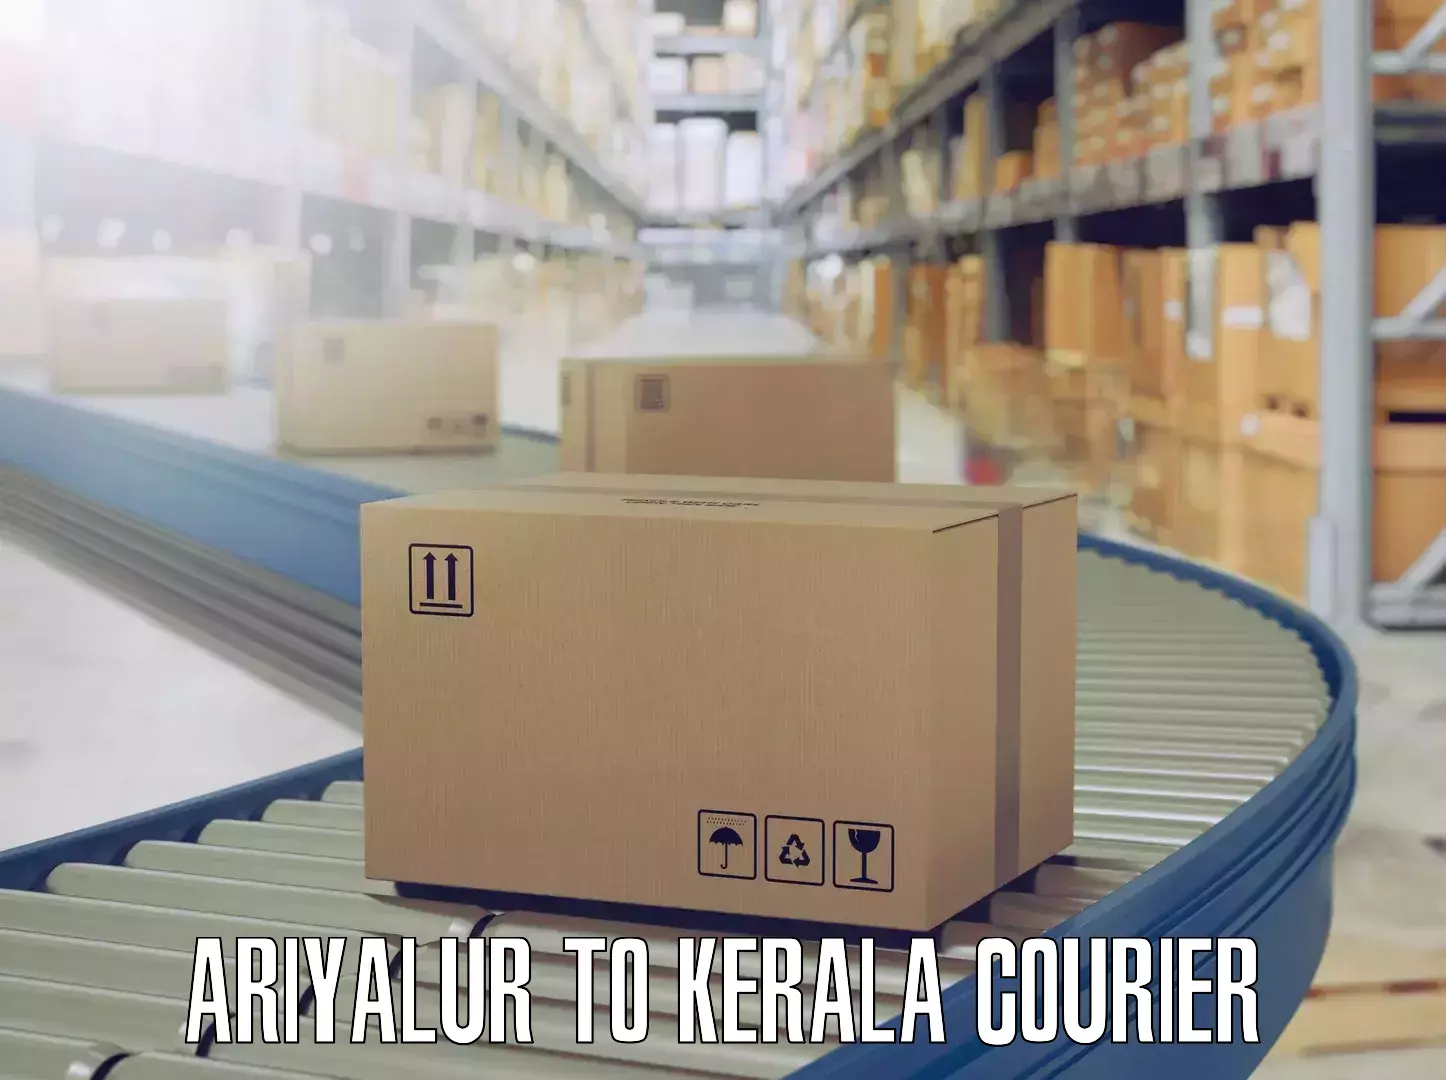 Furniture moving assistance Ariyalur to Kerala